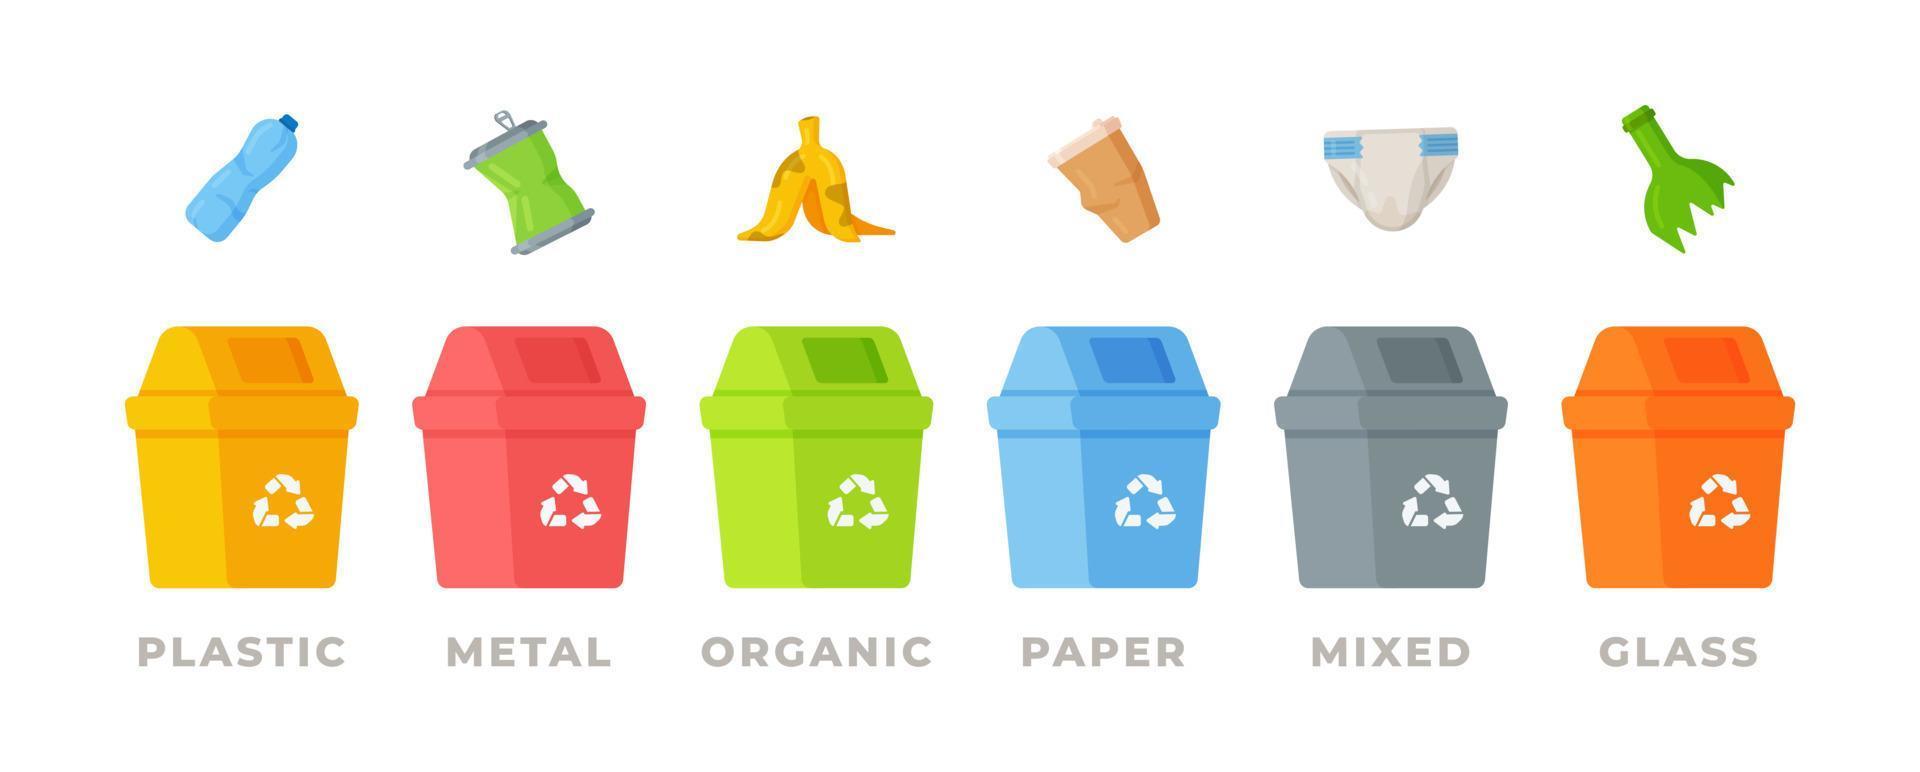 recycling afvalscheiding inzameling en recycling zijn geïsoleerd op een witte achtergrond. organisch, papier, metaal, plastic en gemengd afval. vector